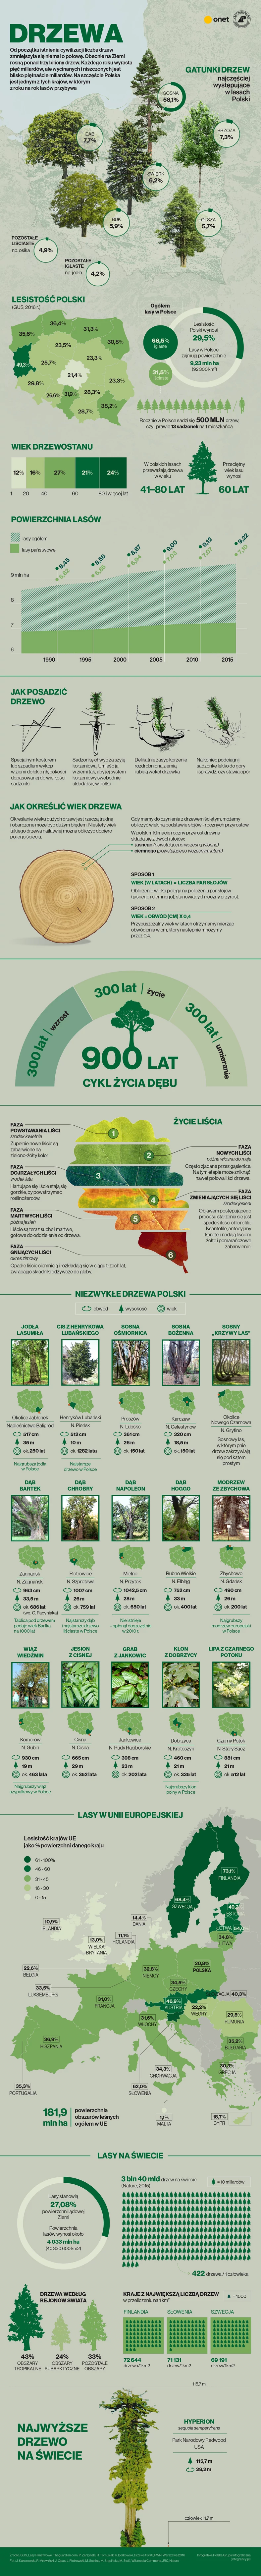 drzewa polska swiat infografika maj2019-01